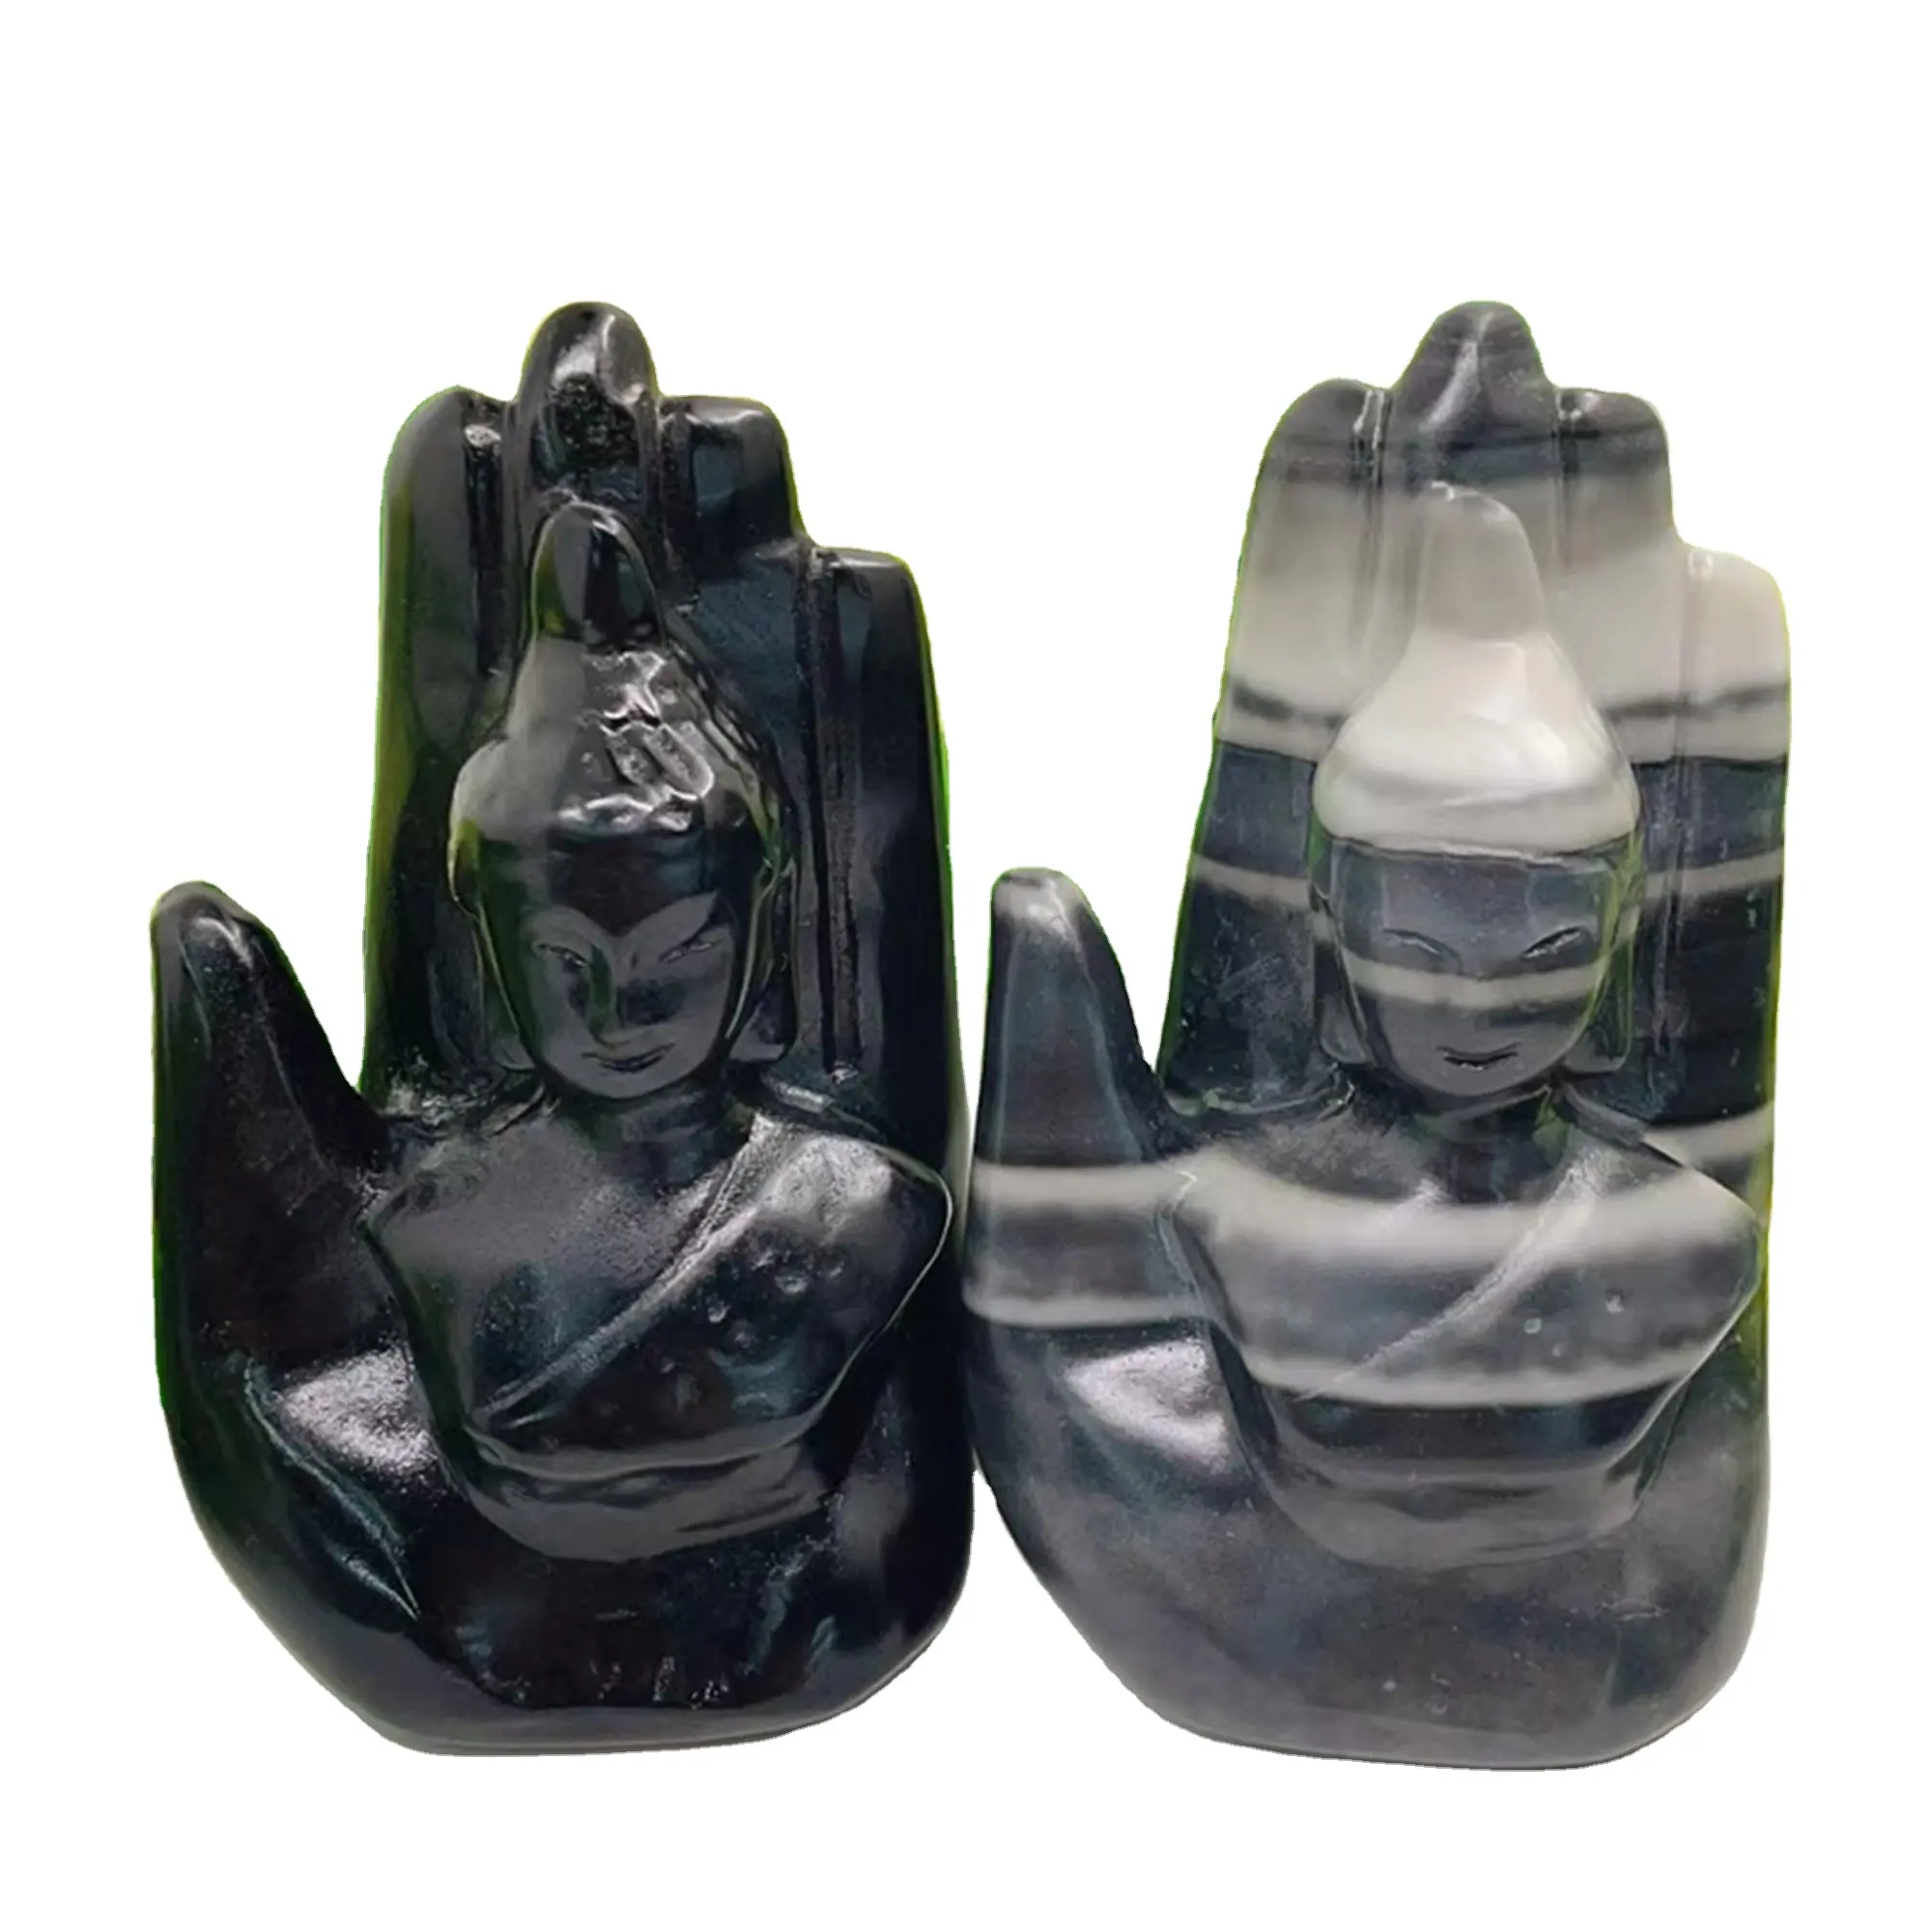 Commercio all'ingrosso di cristallo mani naturali prodotti curativi in pietra artigianato ossidiana taiji Buddha mani feng shui